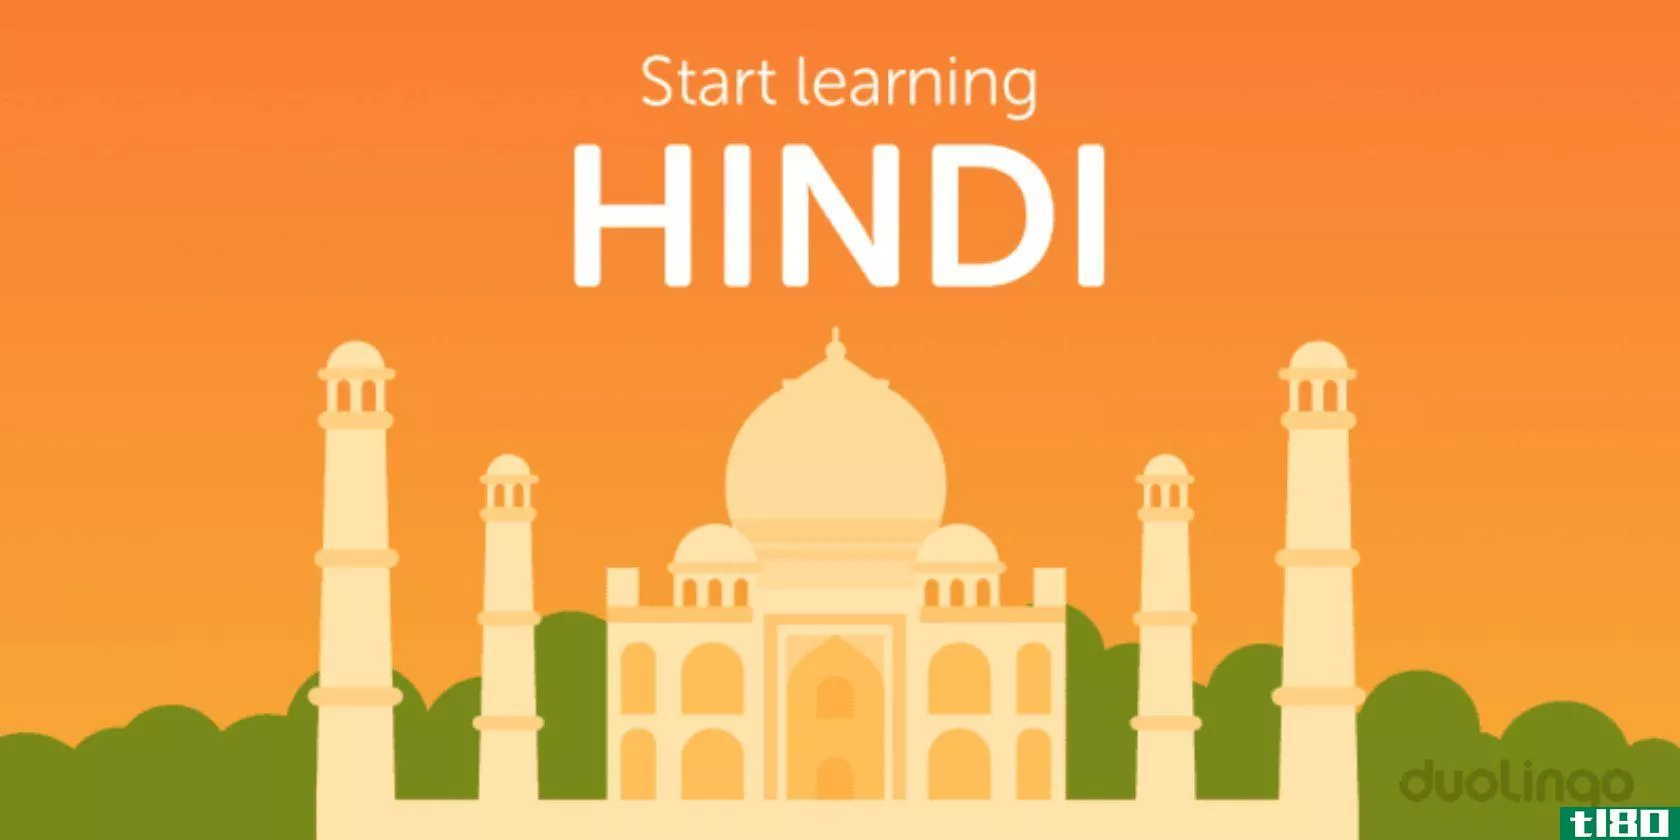 duolingo-hindi-language-learning-course-2